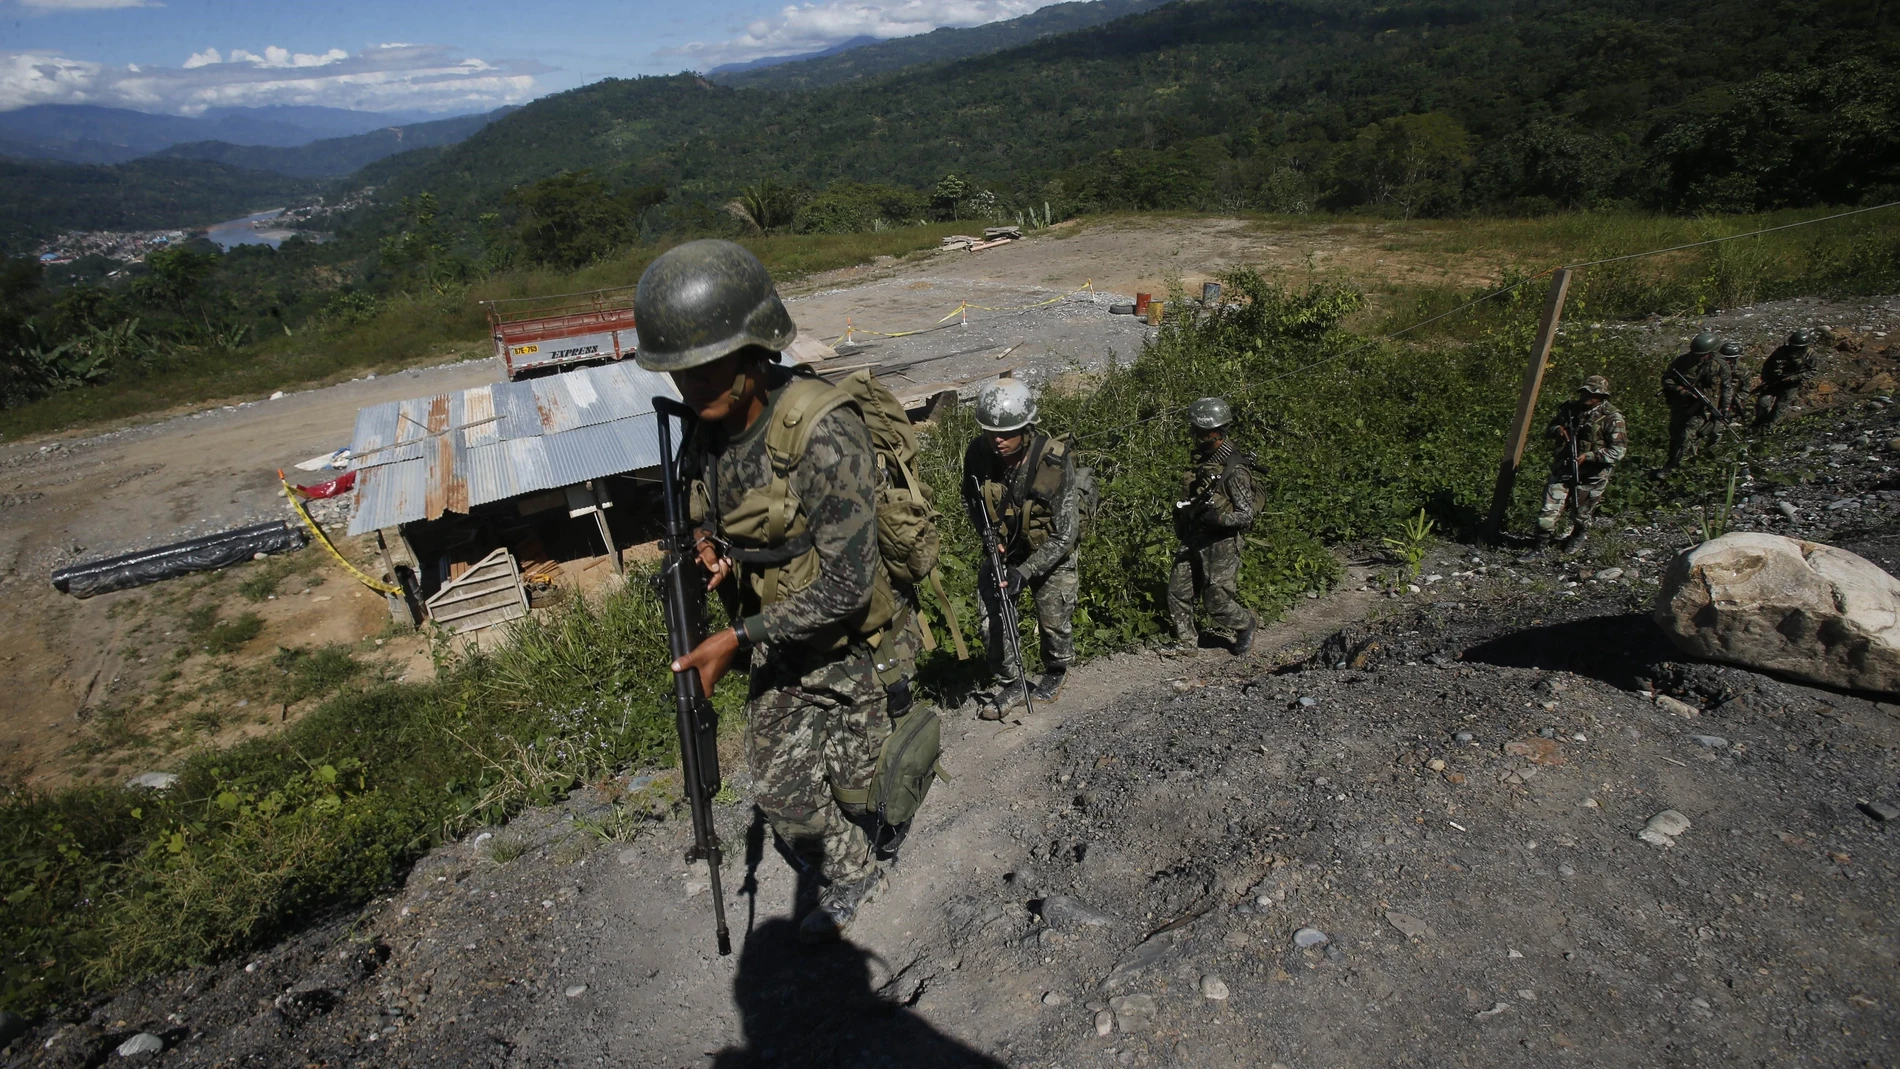 Militares en la región del VRAEM, donde tiene presencia la guerrilla maoísta Sendero Luminoso